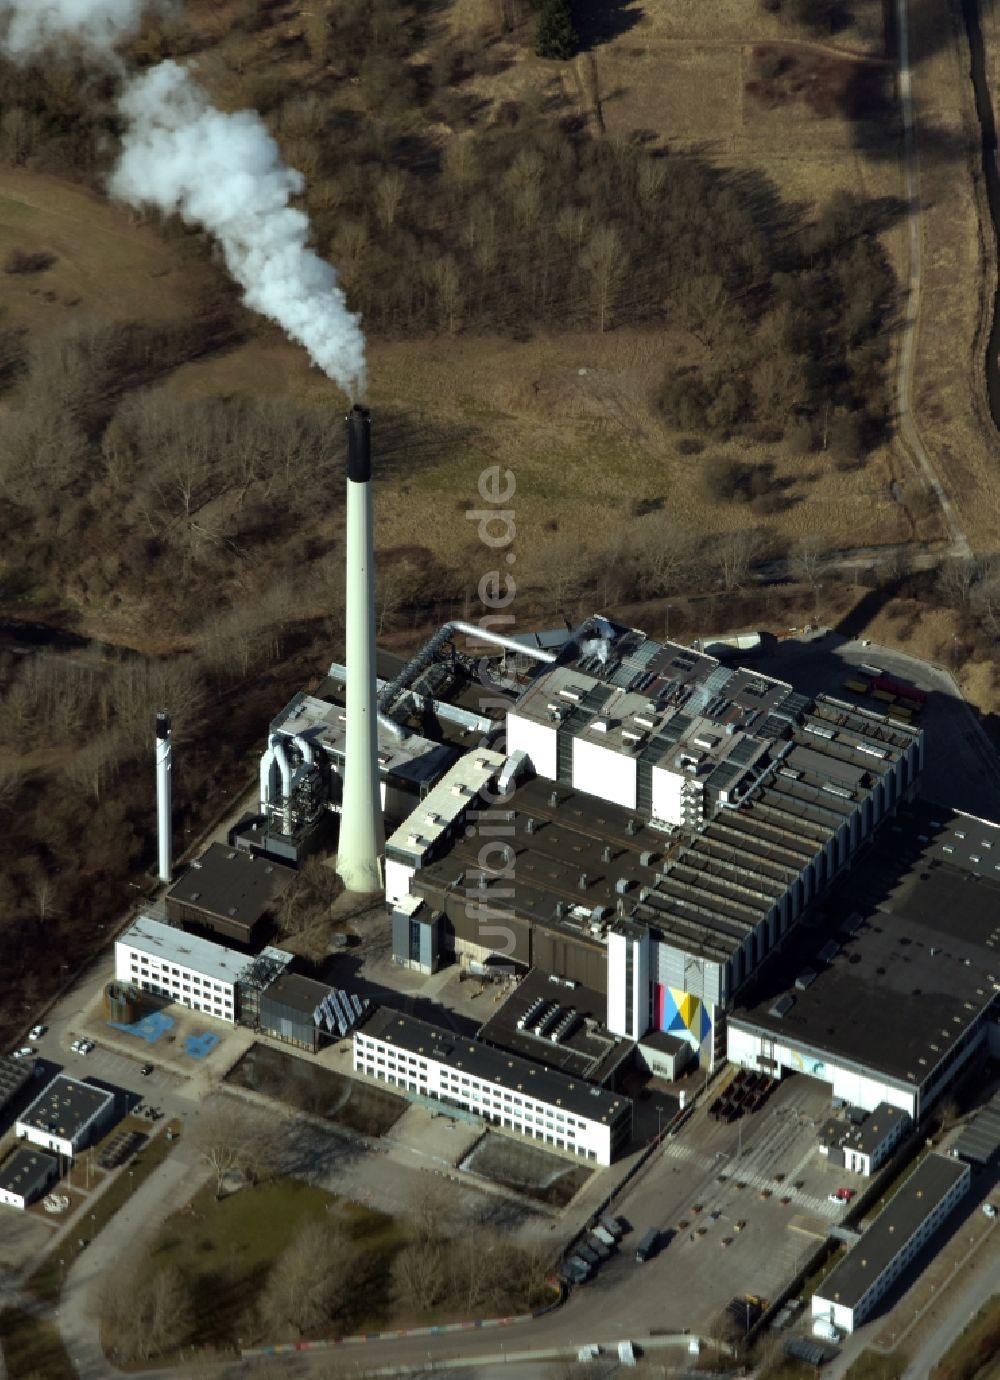 Glostrup aus der Vogelperspektive: Kraftwerksanlagen des Heizkraftwerkes der Müllverbrennungsanlage Vestforbraending in Glostrup in Dänemark